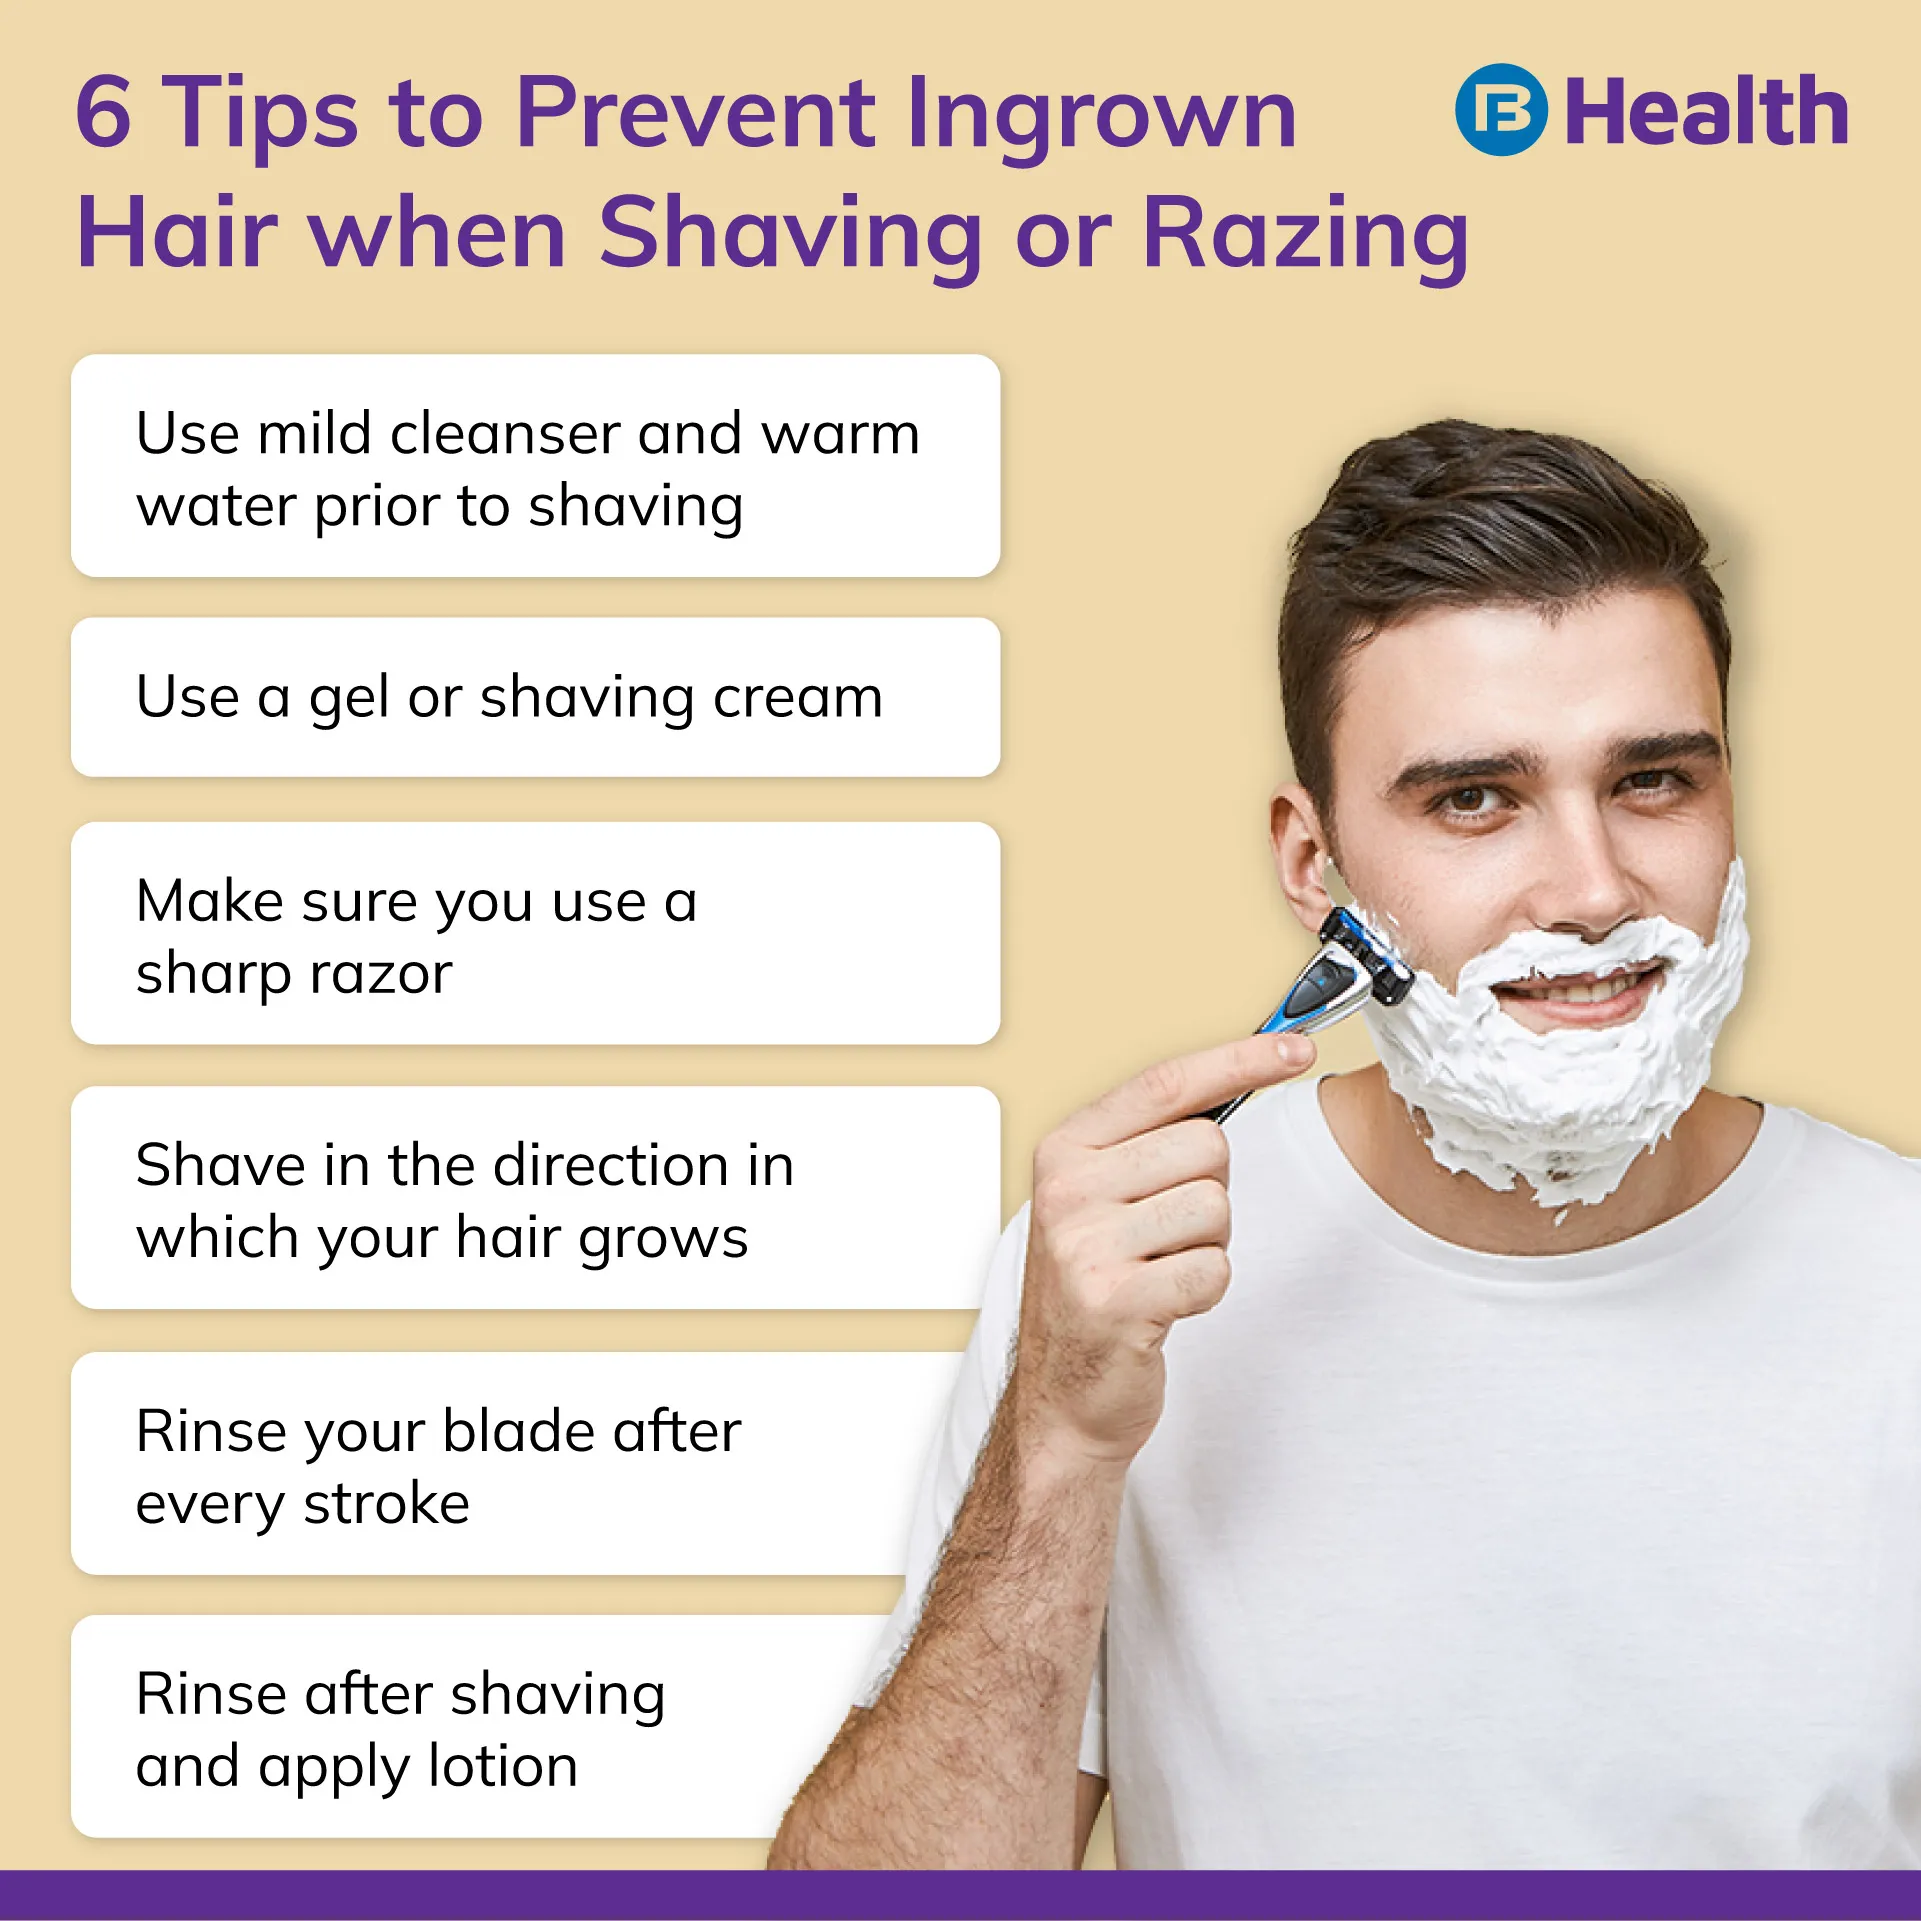 Tips for Ingrown Hair prevention